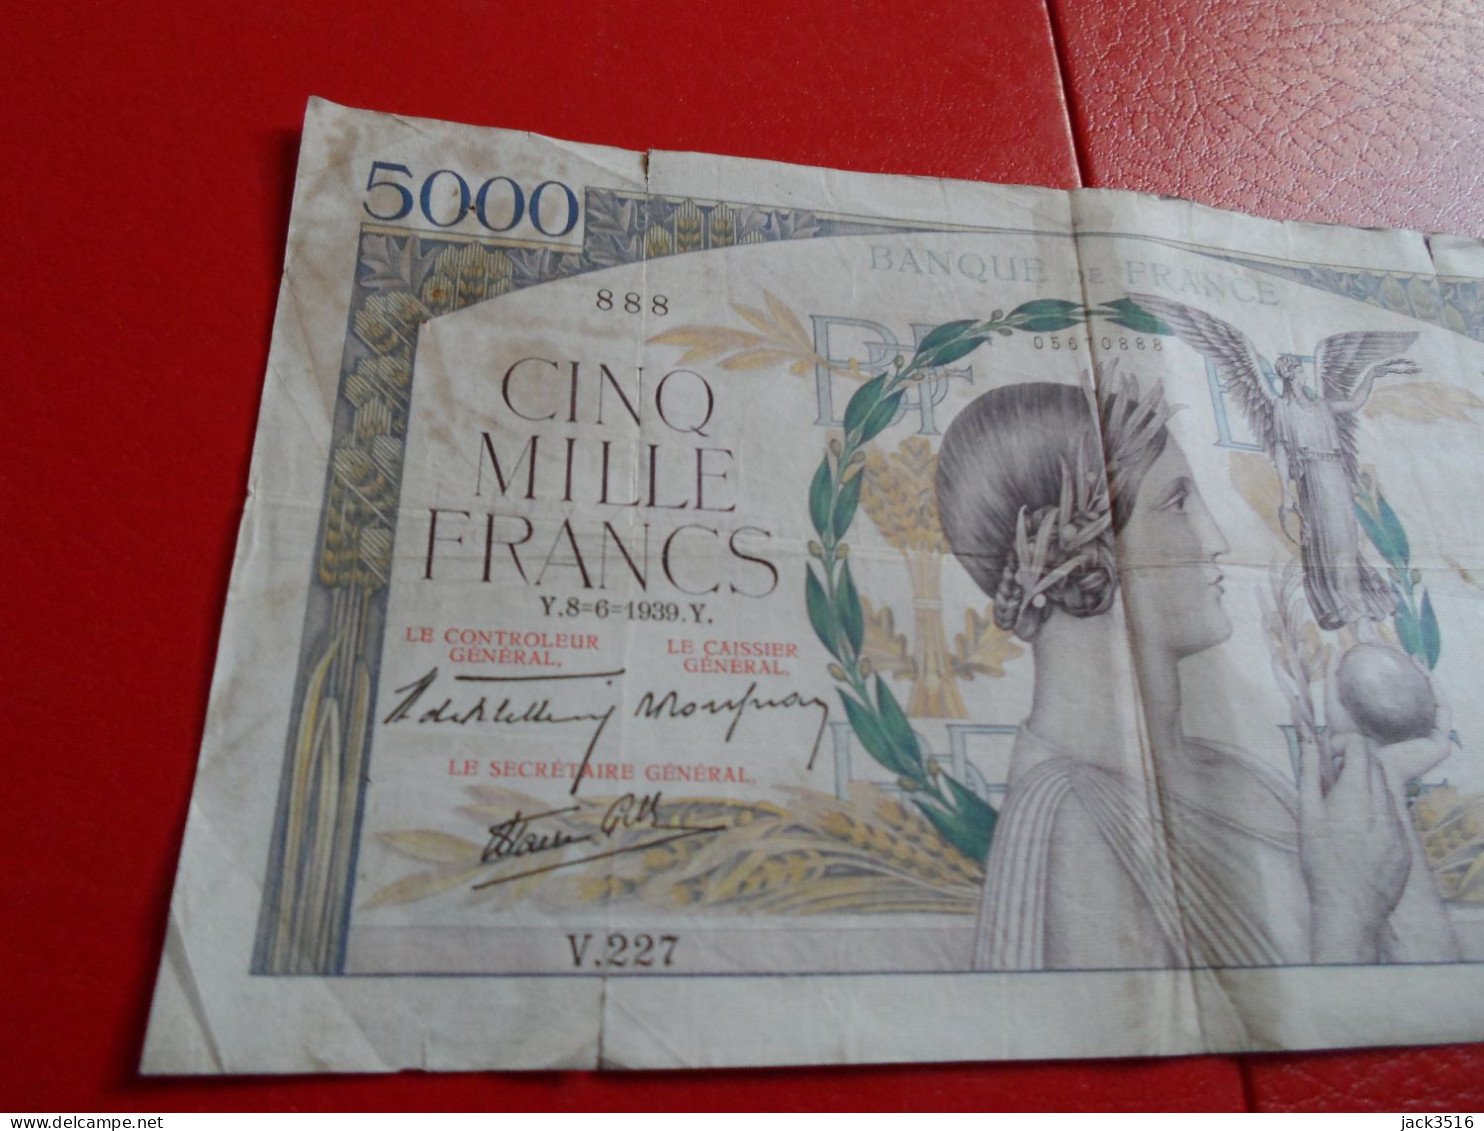 France: 3 billets de 5000 francs victoire 1939 no se suivent rare lire descript